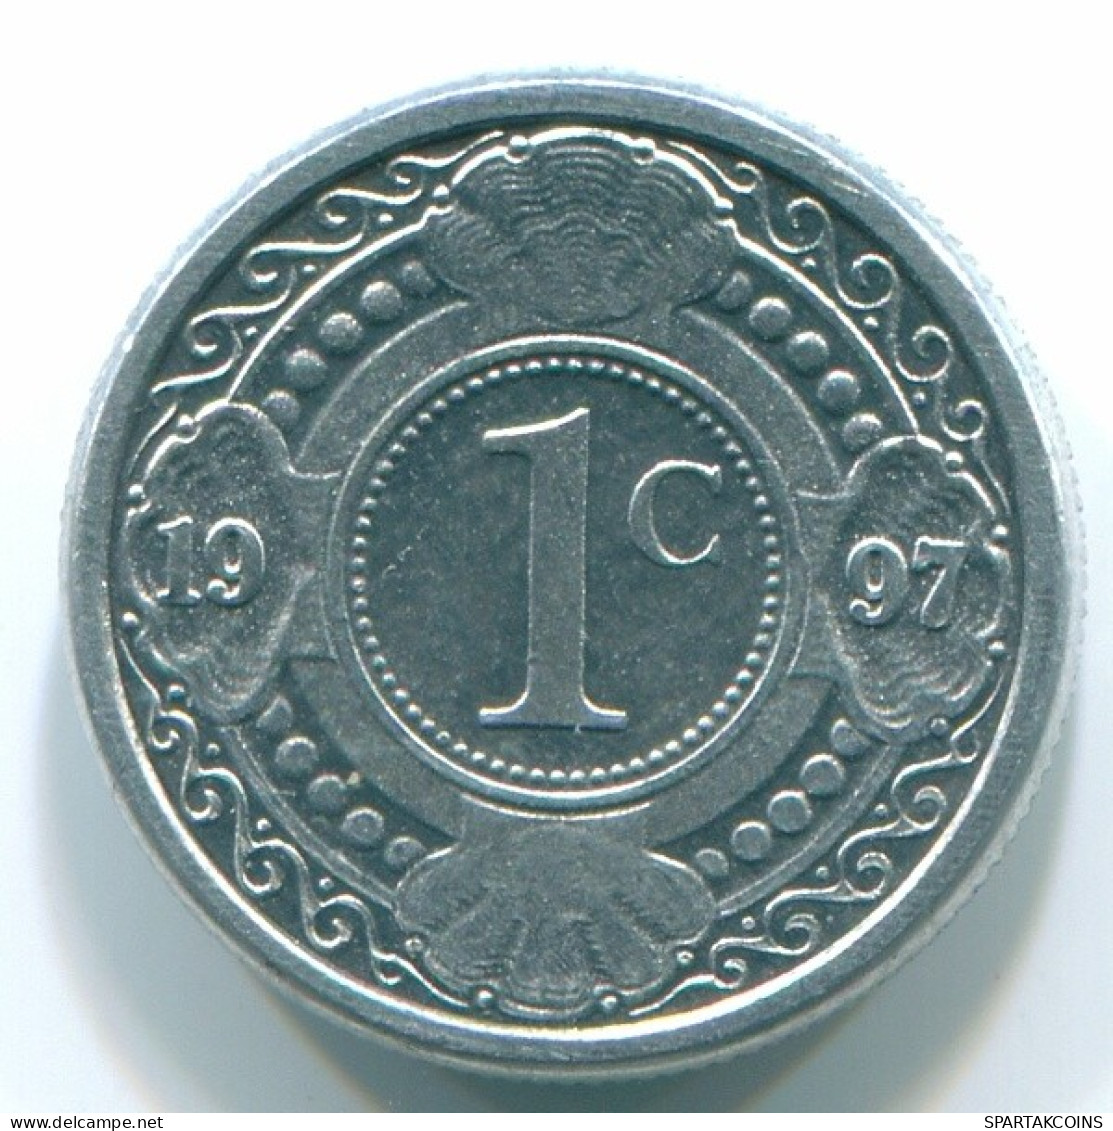 1 CENT 1996 NETHERLANDS ANTILLES Aluminium Colonial Coin #S13147.U.A - Netherlands Antilles